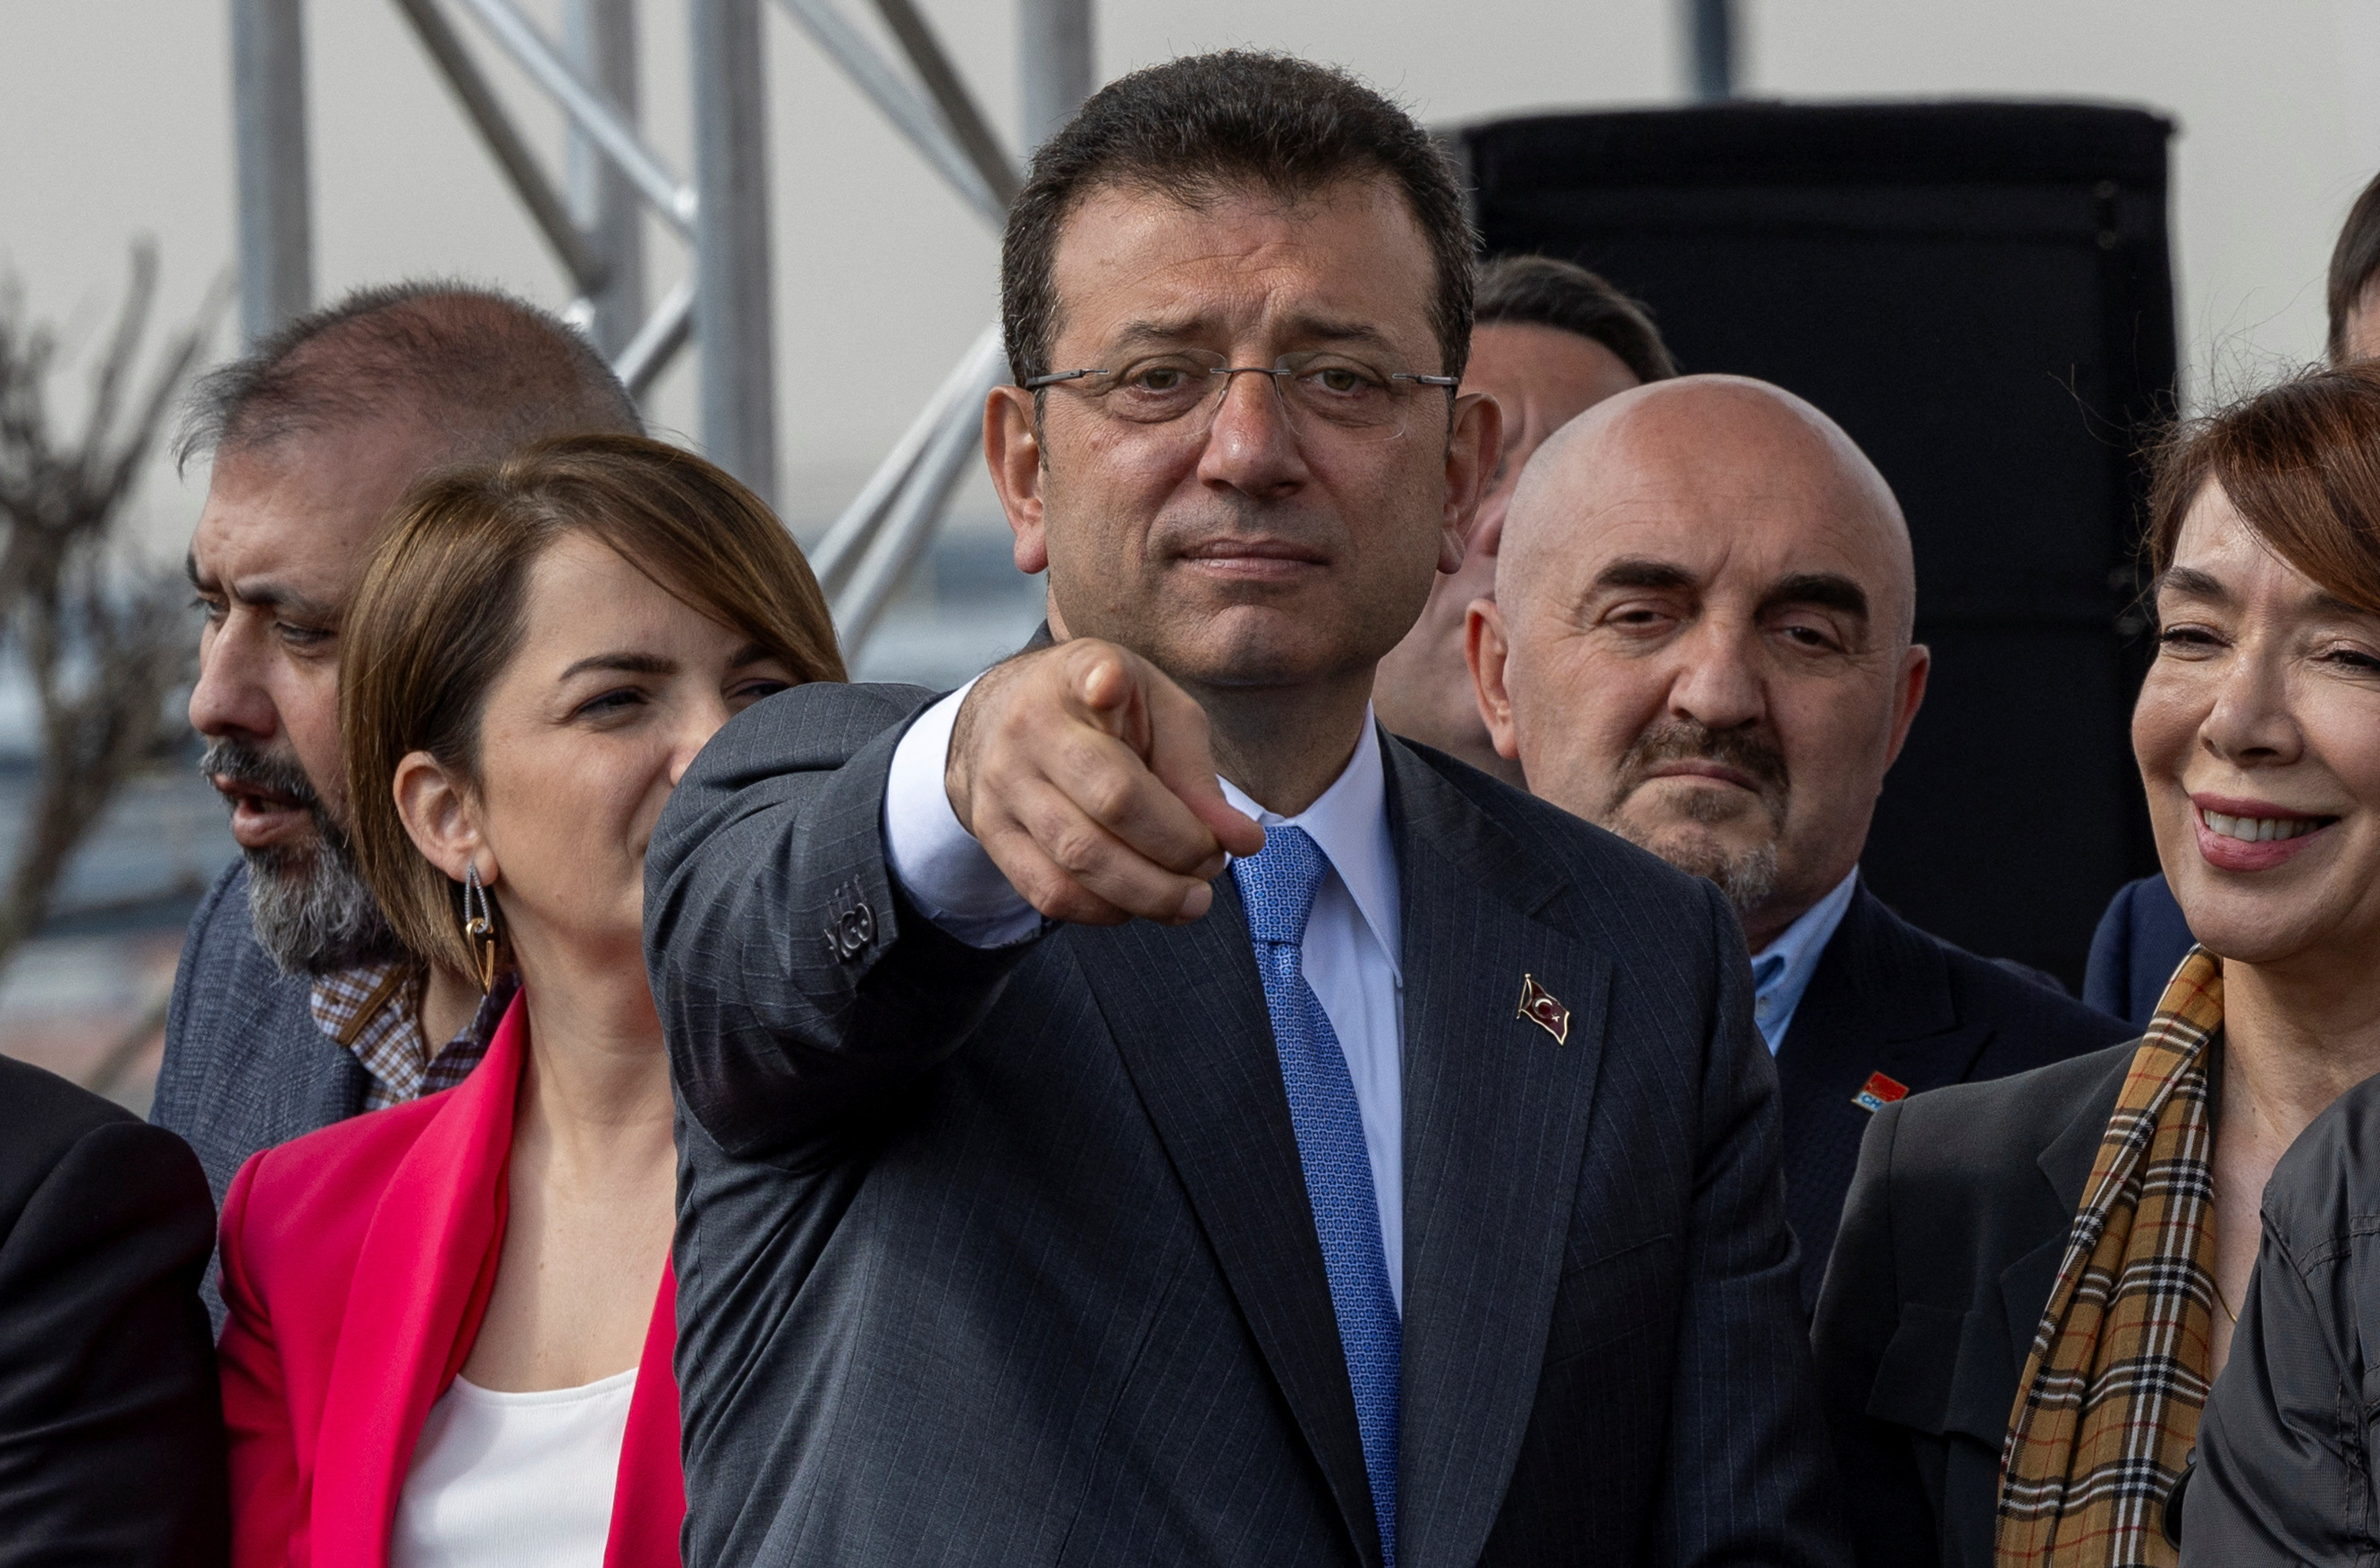 نظرة فاحصة-انتخابات بلدية في تركيا تشكل اختبارا لأردوغان ومنافسه إمام أوغلو - SWI swissinfo.ch